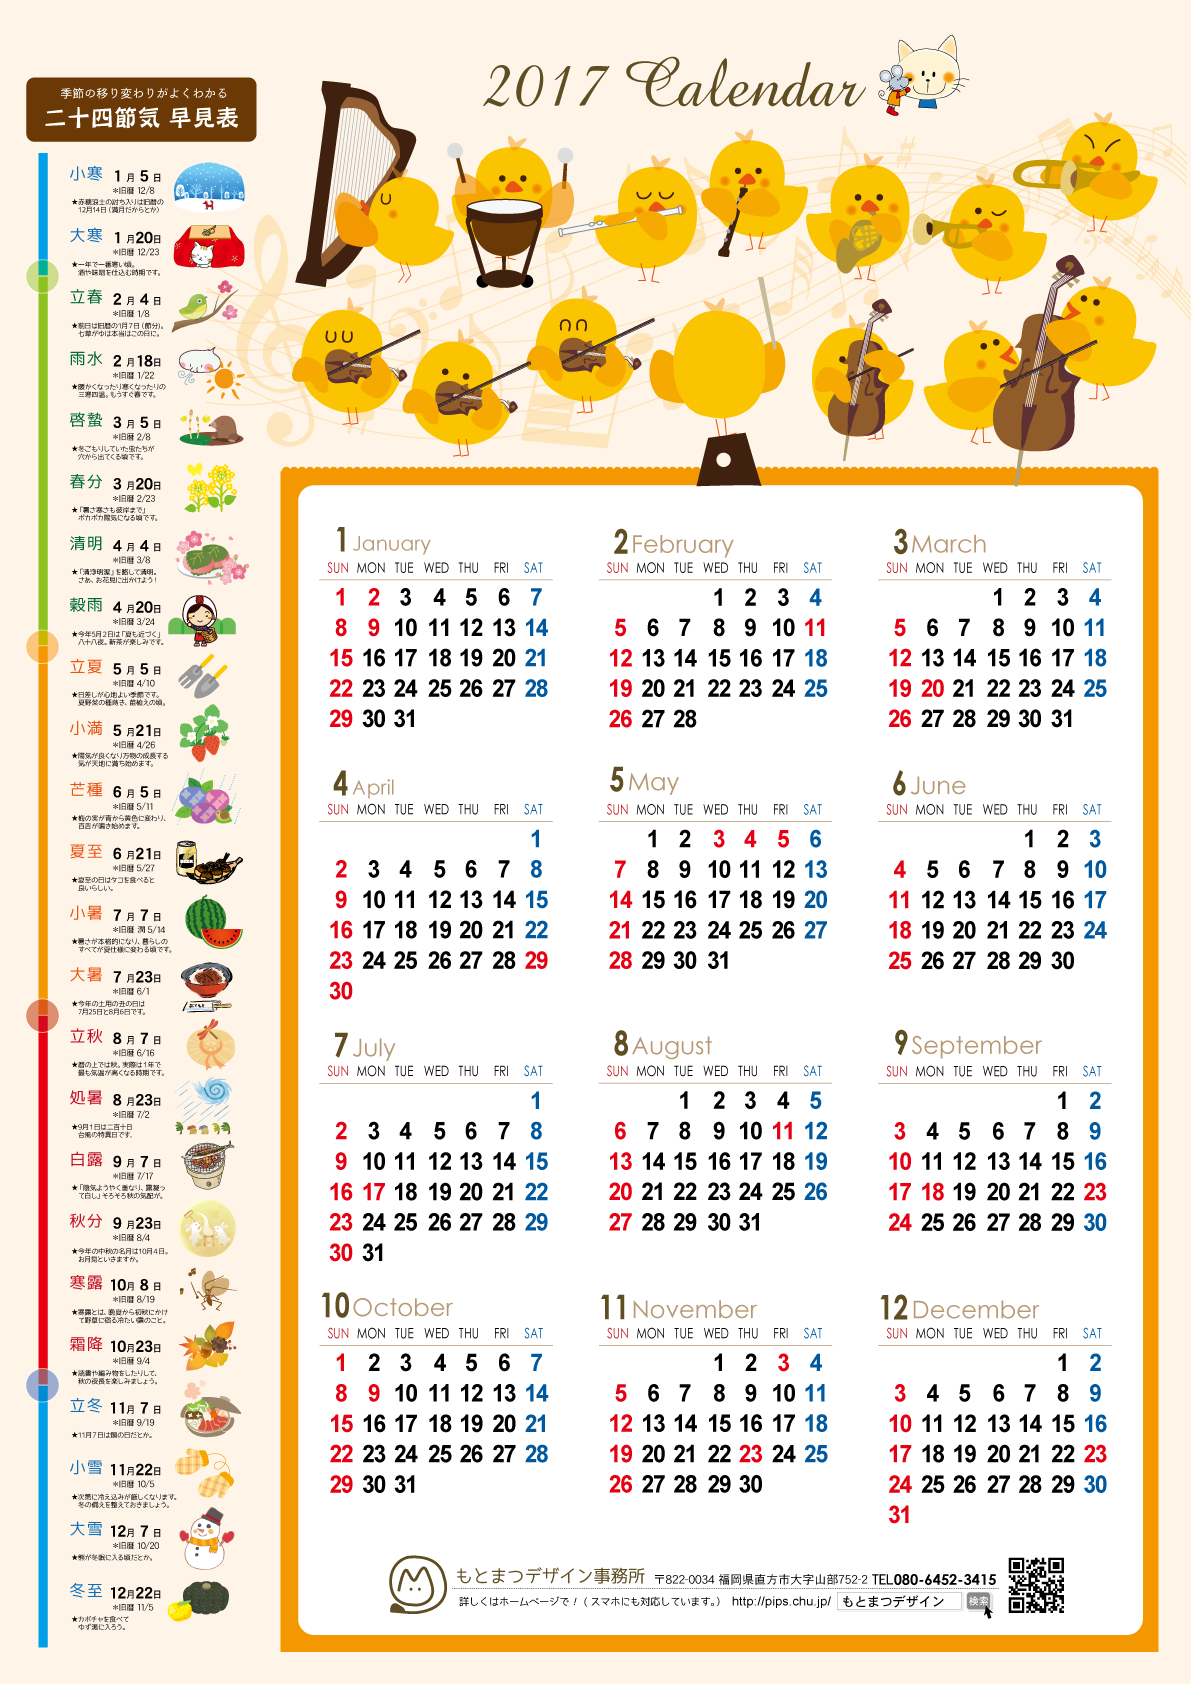 オリジナルカレンダー17 もとまつデザイン事務所 福岡県直方市 印刷デザイン ホームページ制作 イラスト作成